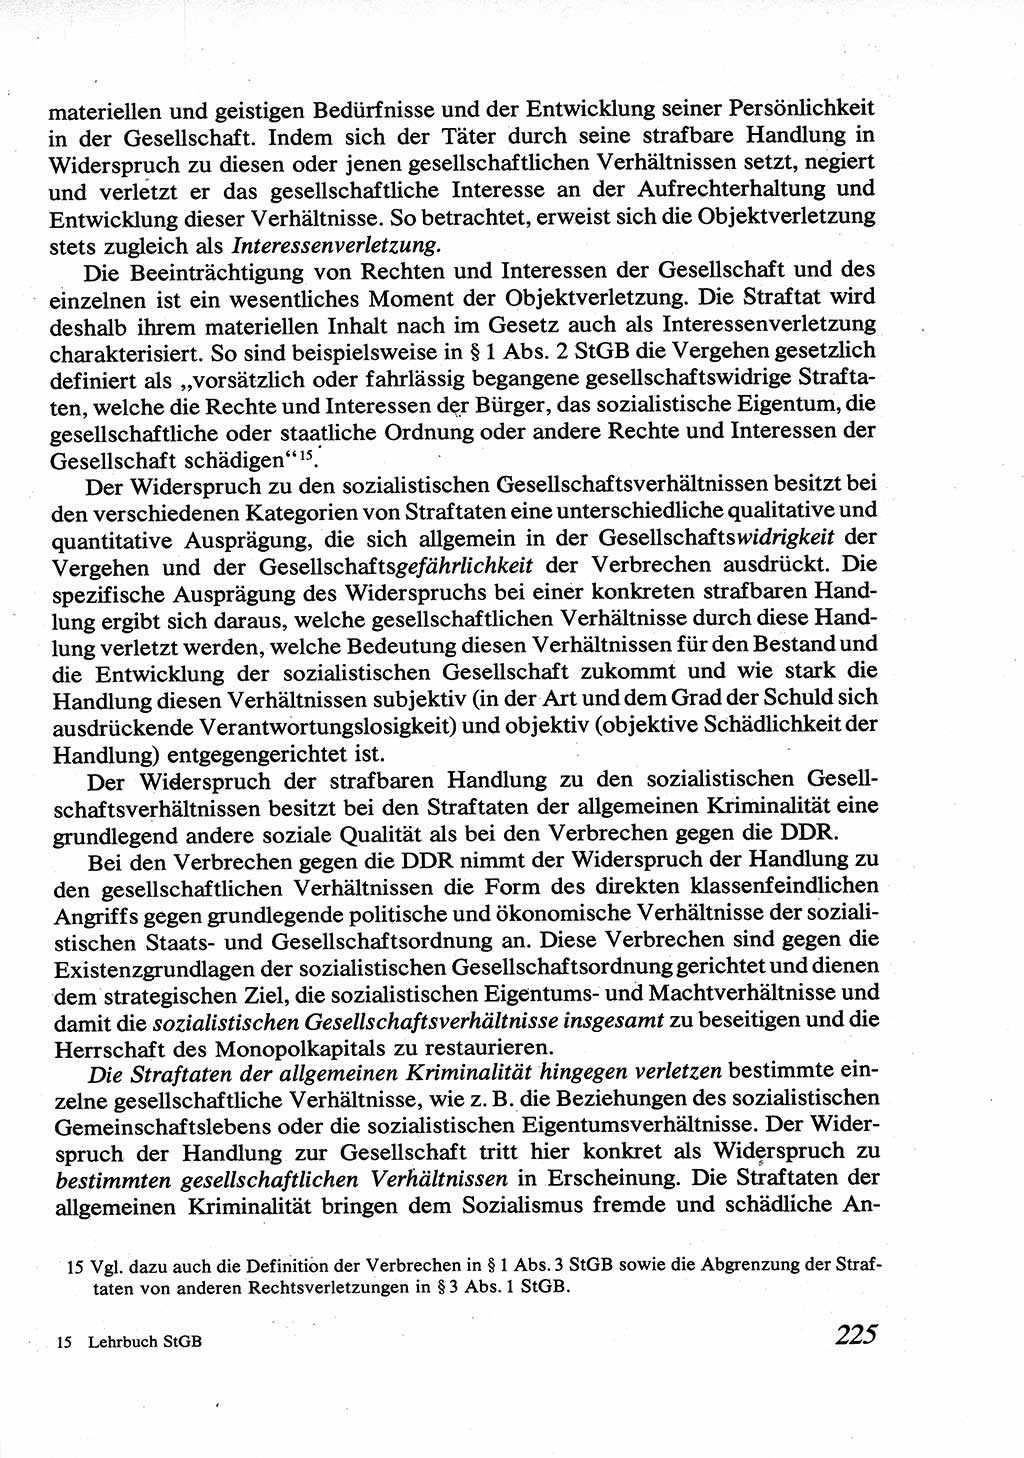 Strafrecht [Deutsche Demokratische Republik (DDR)], Allgemeiner Teil, Lehrbuch 1976, Seite 225 (Strafr. DDR AT Lb. 1976, S. 225)